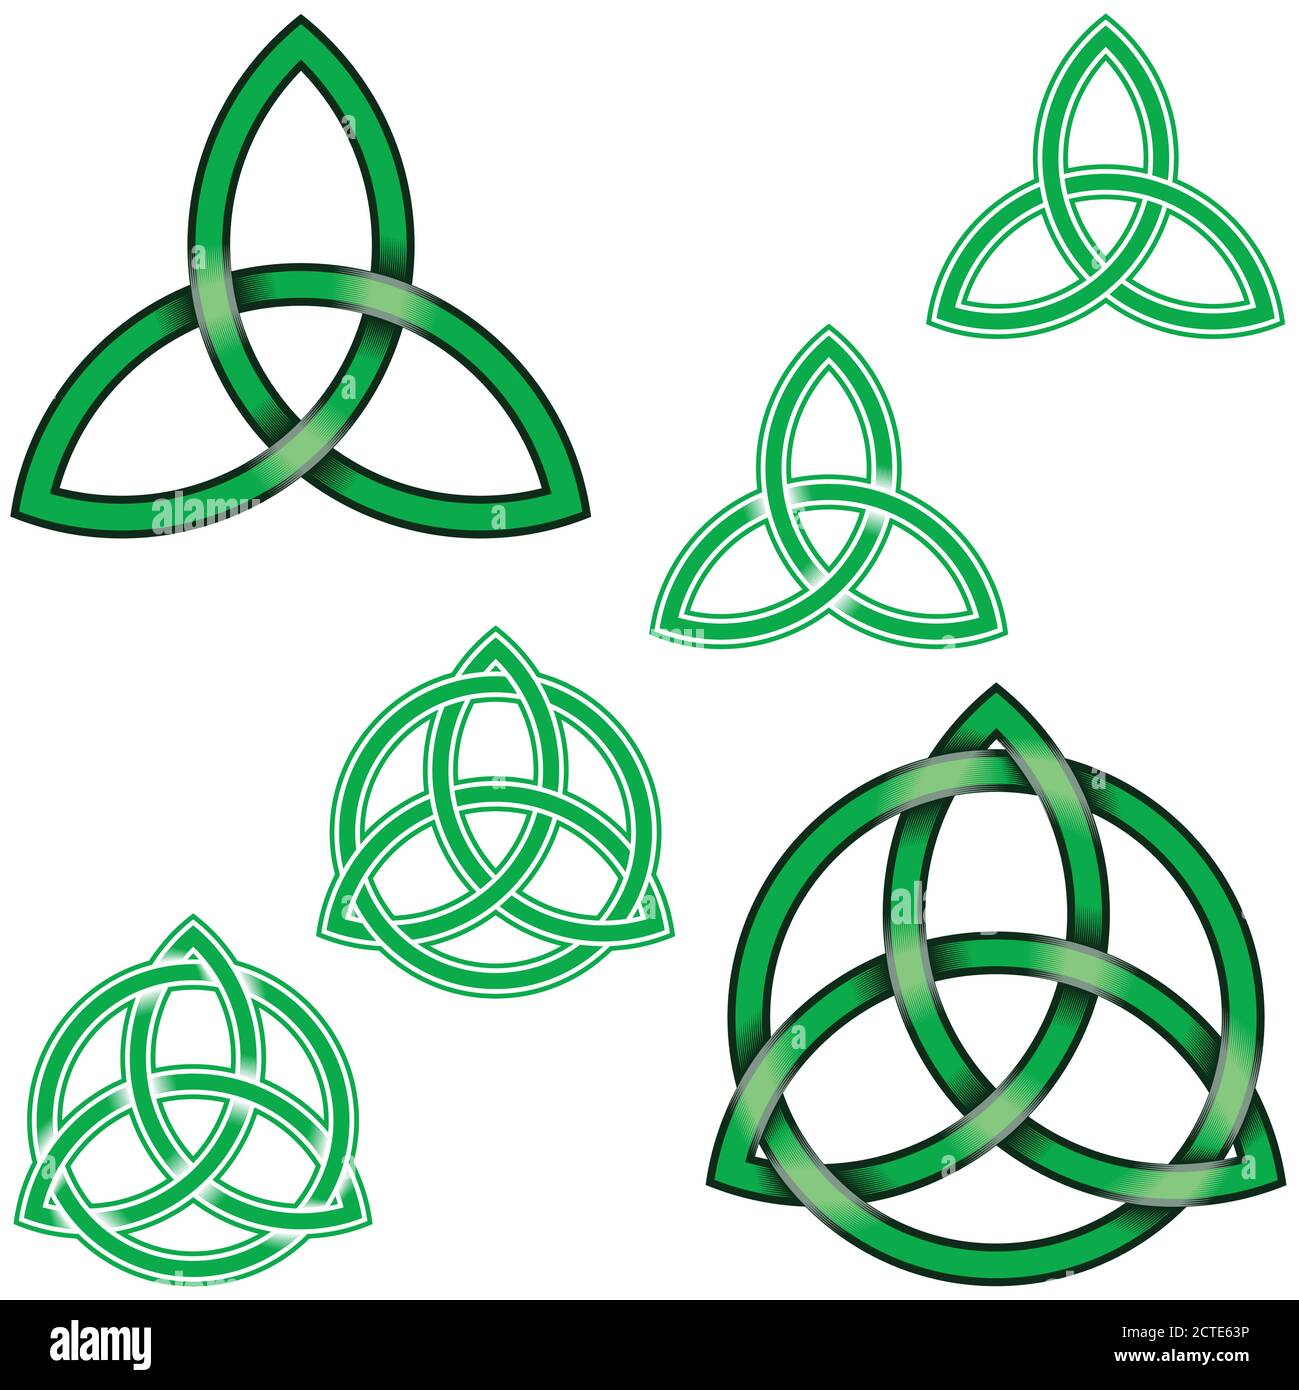 Vektor-Illustration von Wicca Symbol, Wiccan Triqueta umschlungen mit Kreis, alle auf weißem Hintergrund Stock Vektor